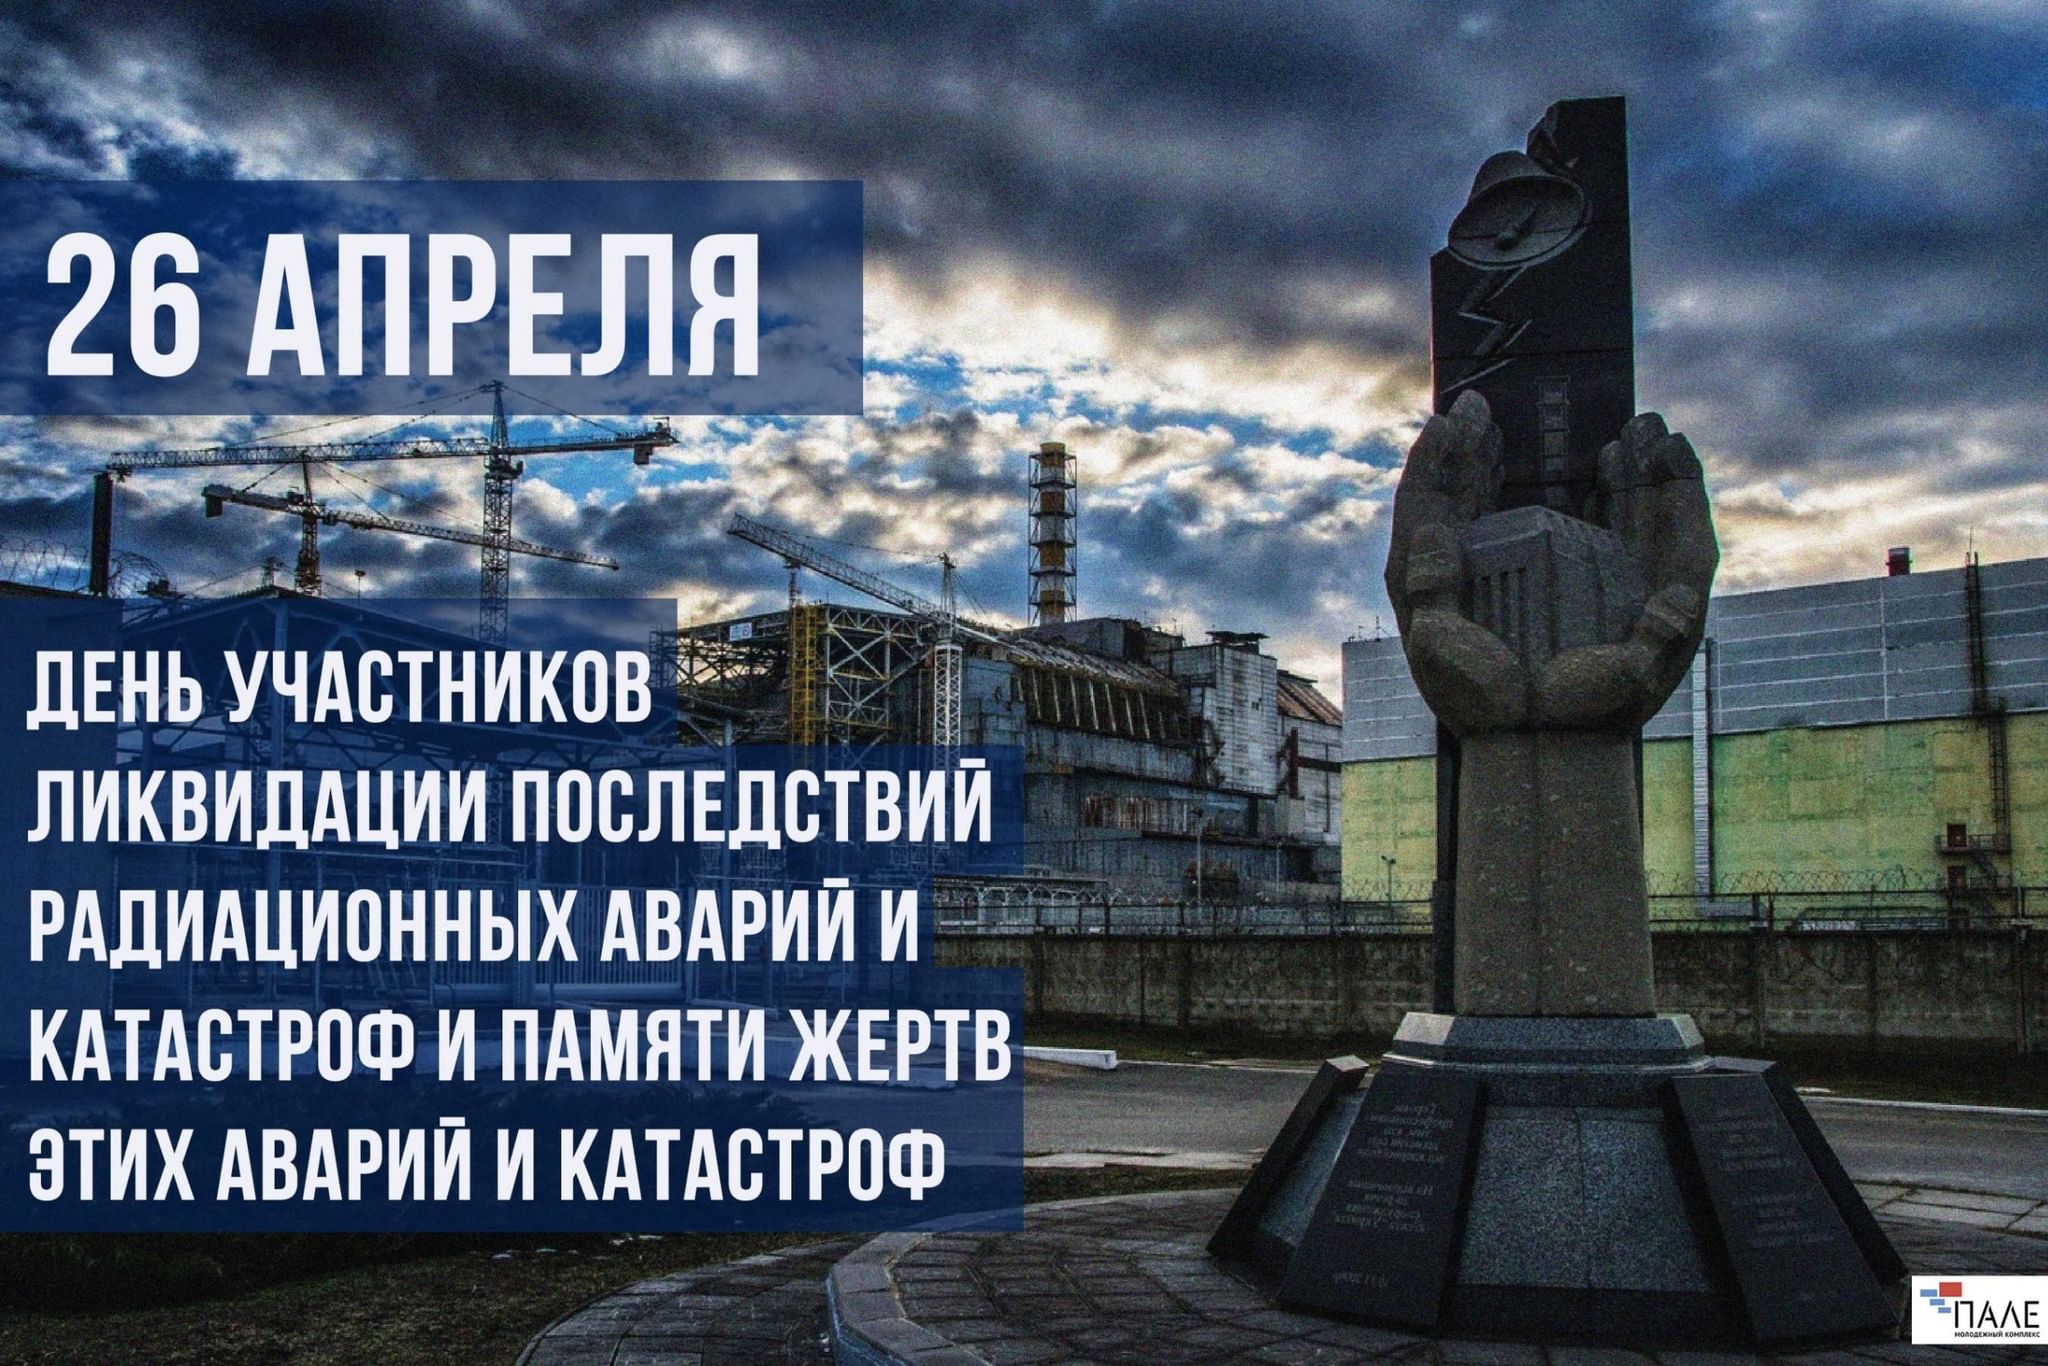 26 апреля 2021 г. 26 Апреля день памяти ликвидаторов аварии на Чернобыльской АЭС. День памяти ликвидации аварии на ЧАЭС (Чернобыль). 26 Апреля день памяти погибших в радиационных авариях и катастрофах. 26 Апреля – день участников ликвидации аварии на ЧАЭС.